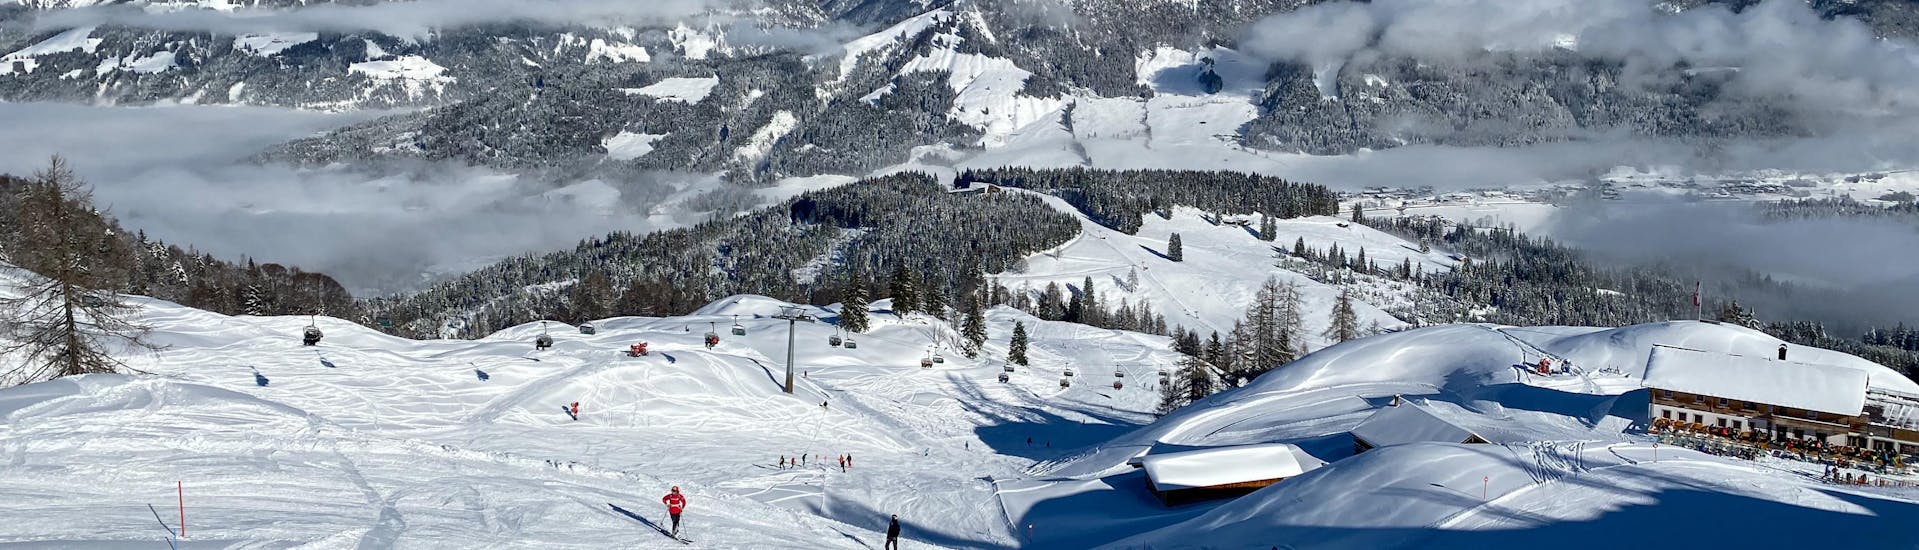 Ausblick auf die sonnige Berglandschaft beim Skifahren lernen mit den Skischulen in Lofer.